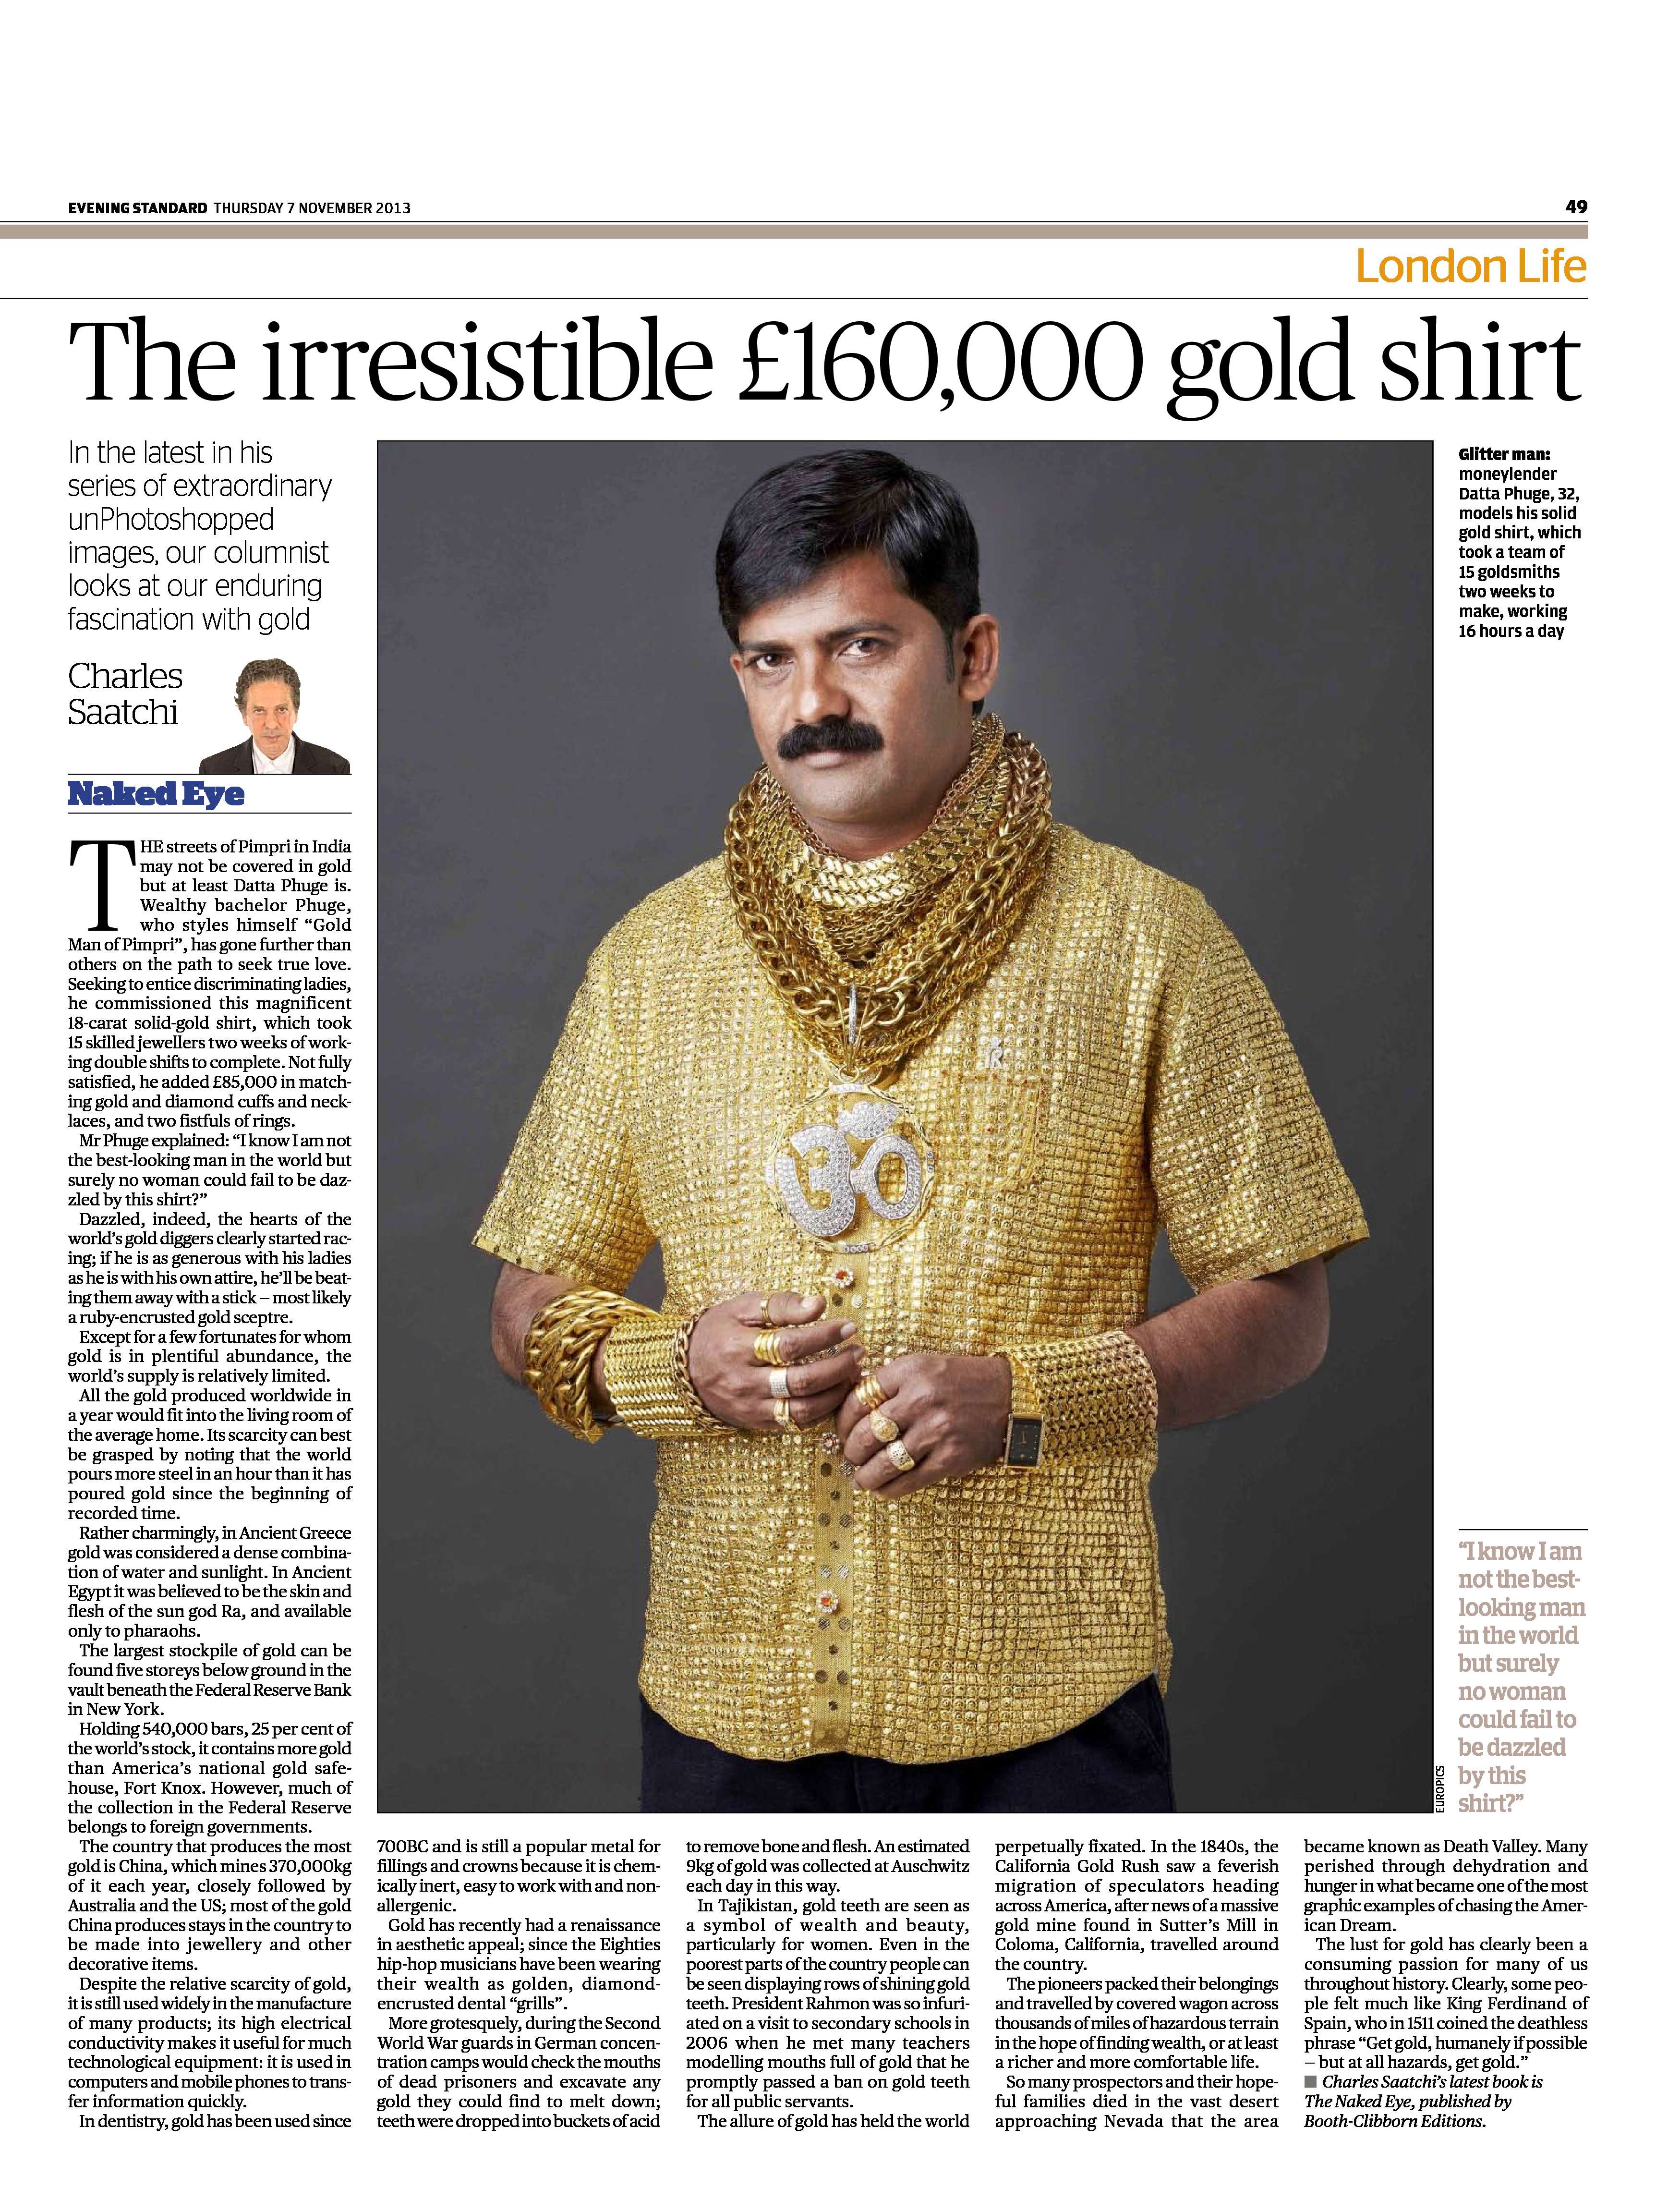 Gold shirt